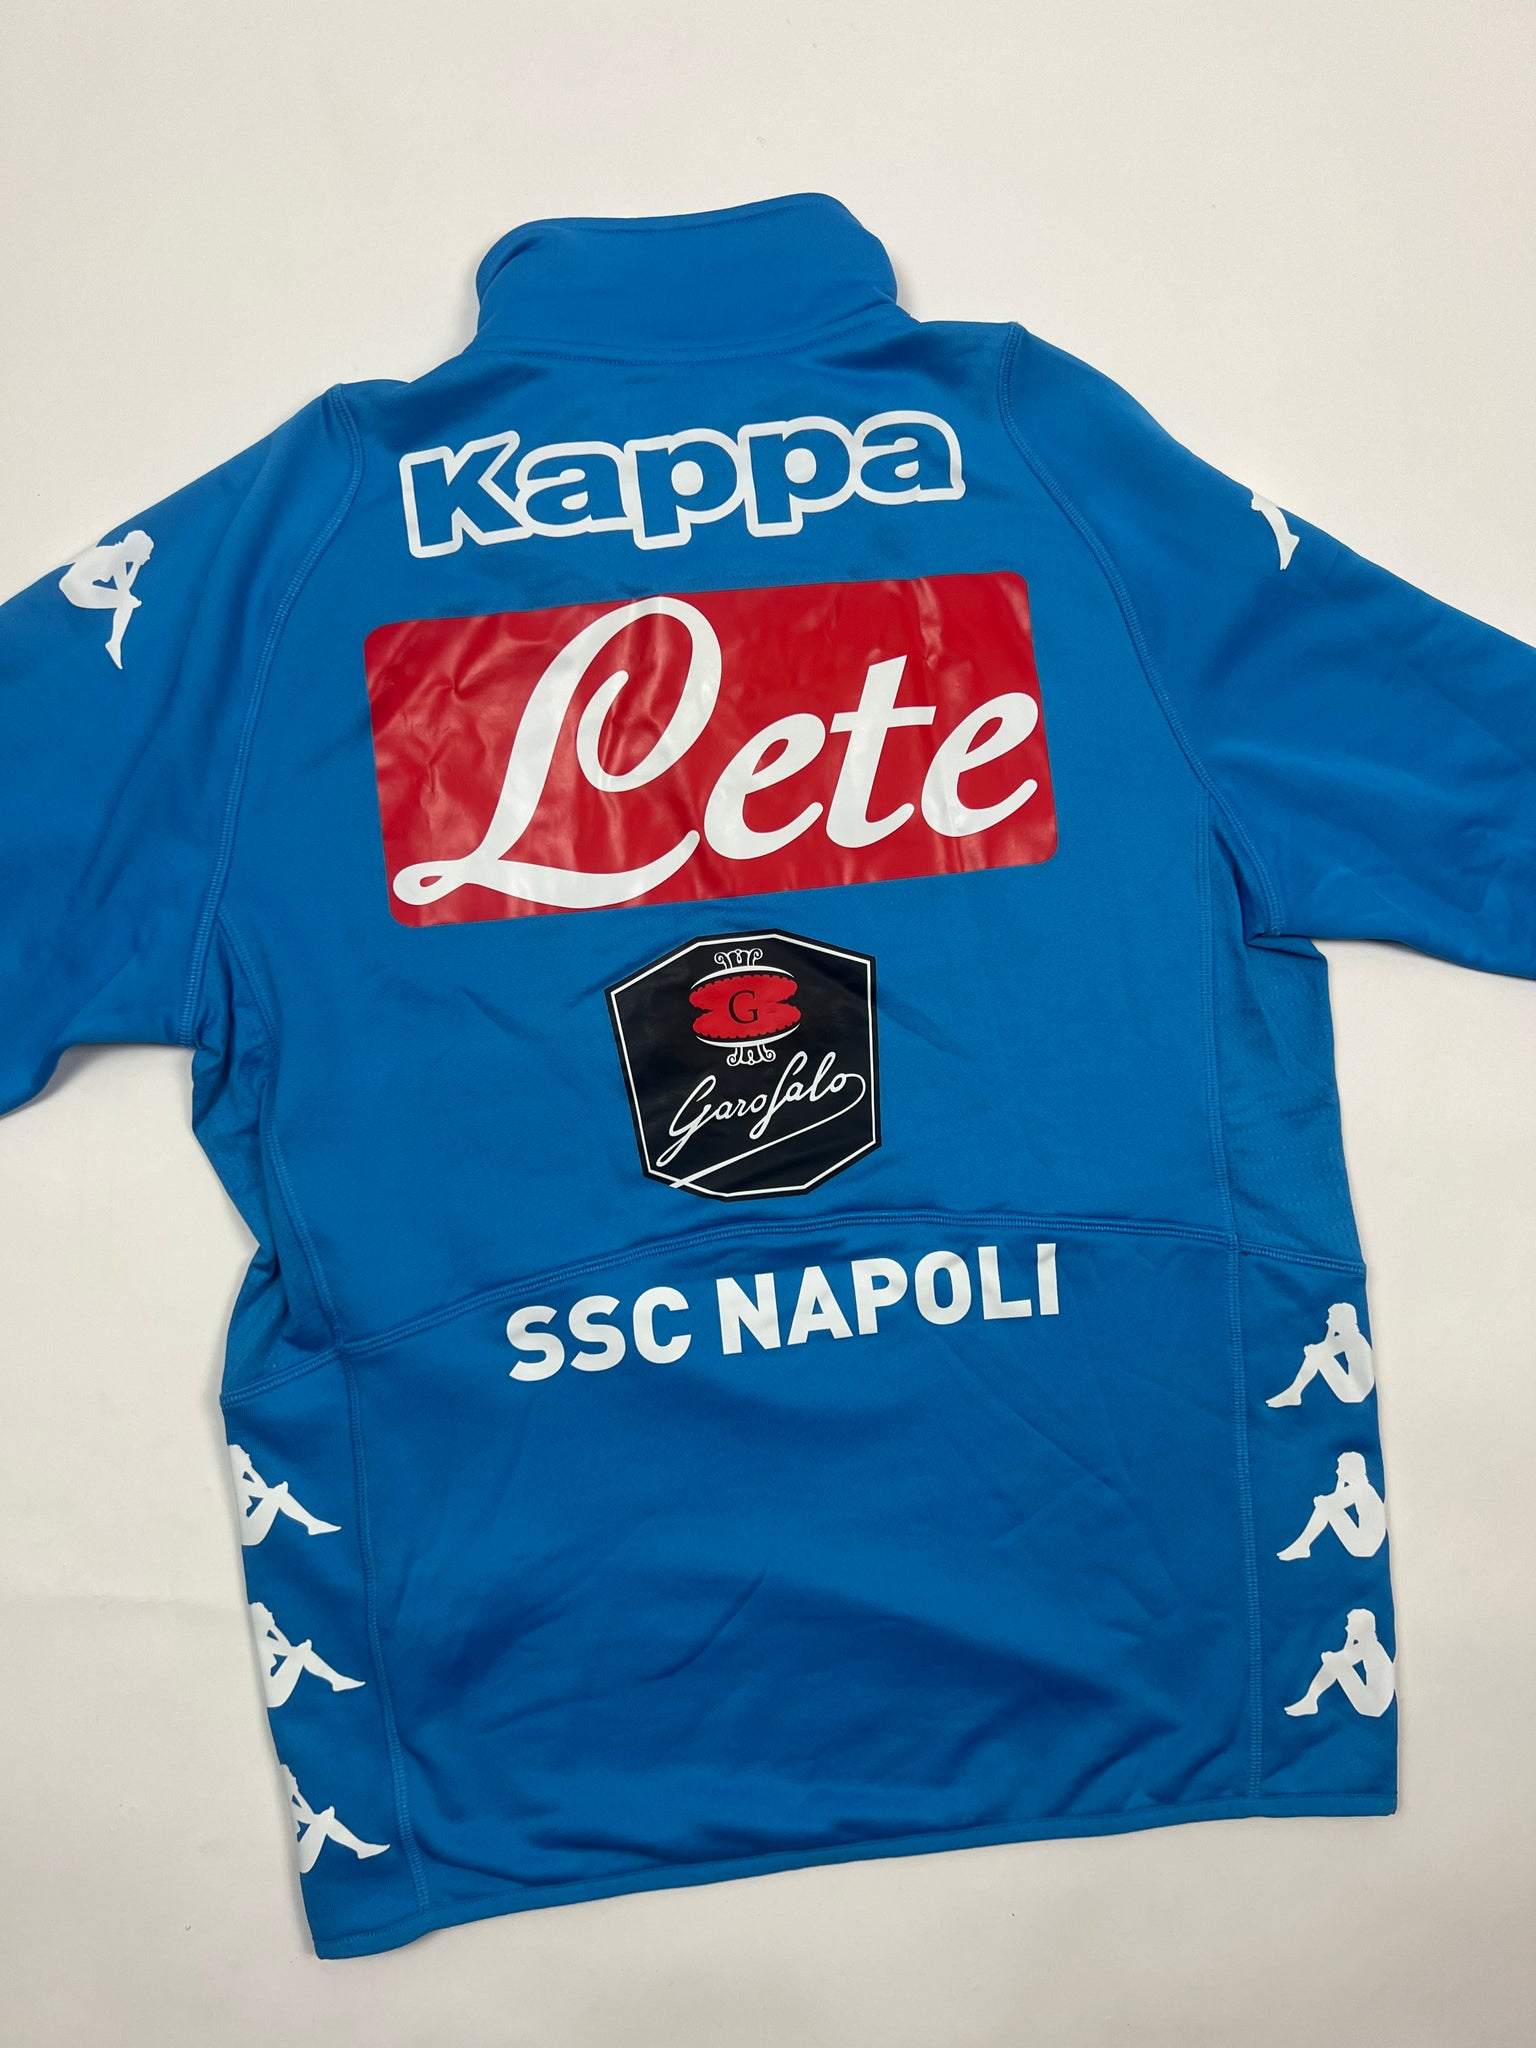 Kappa SSC Napoli Track Top (L)